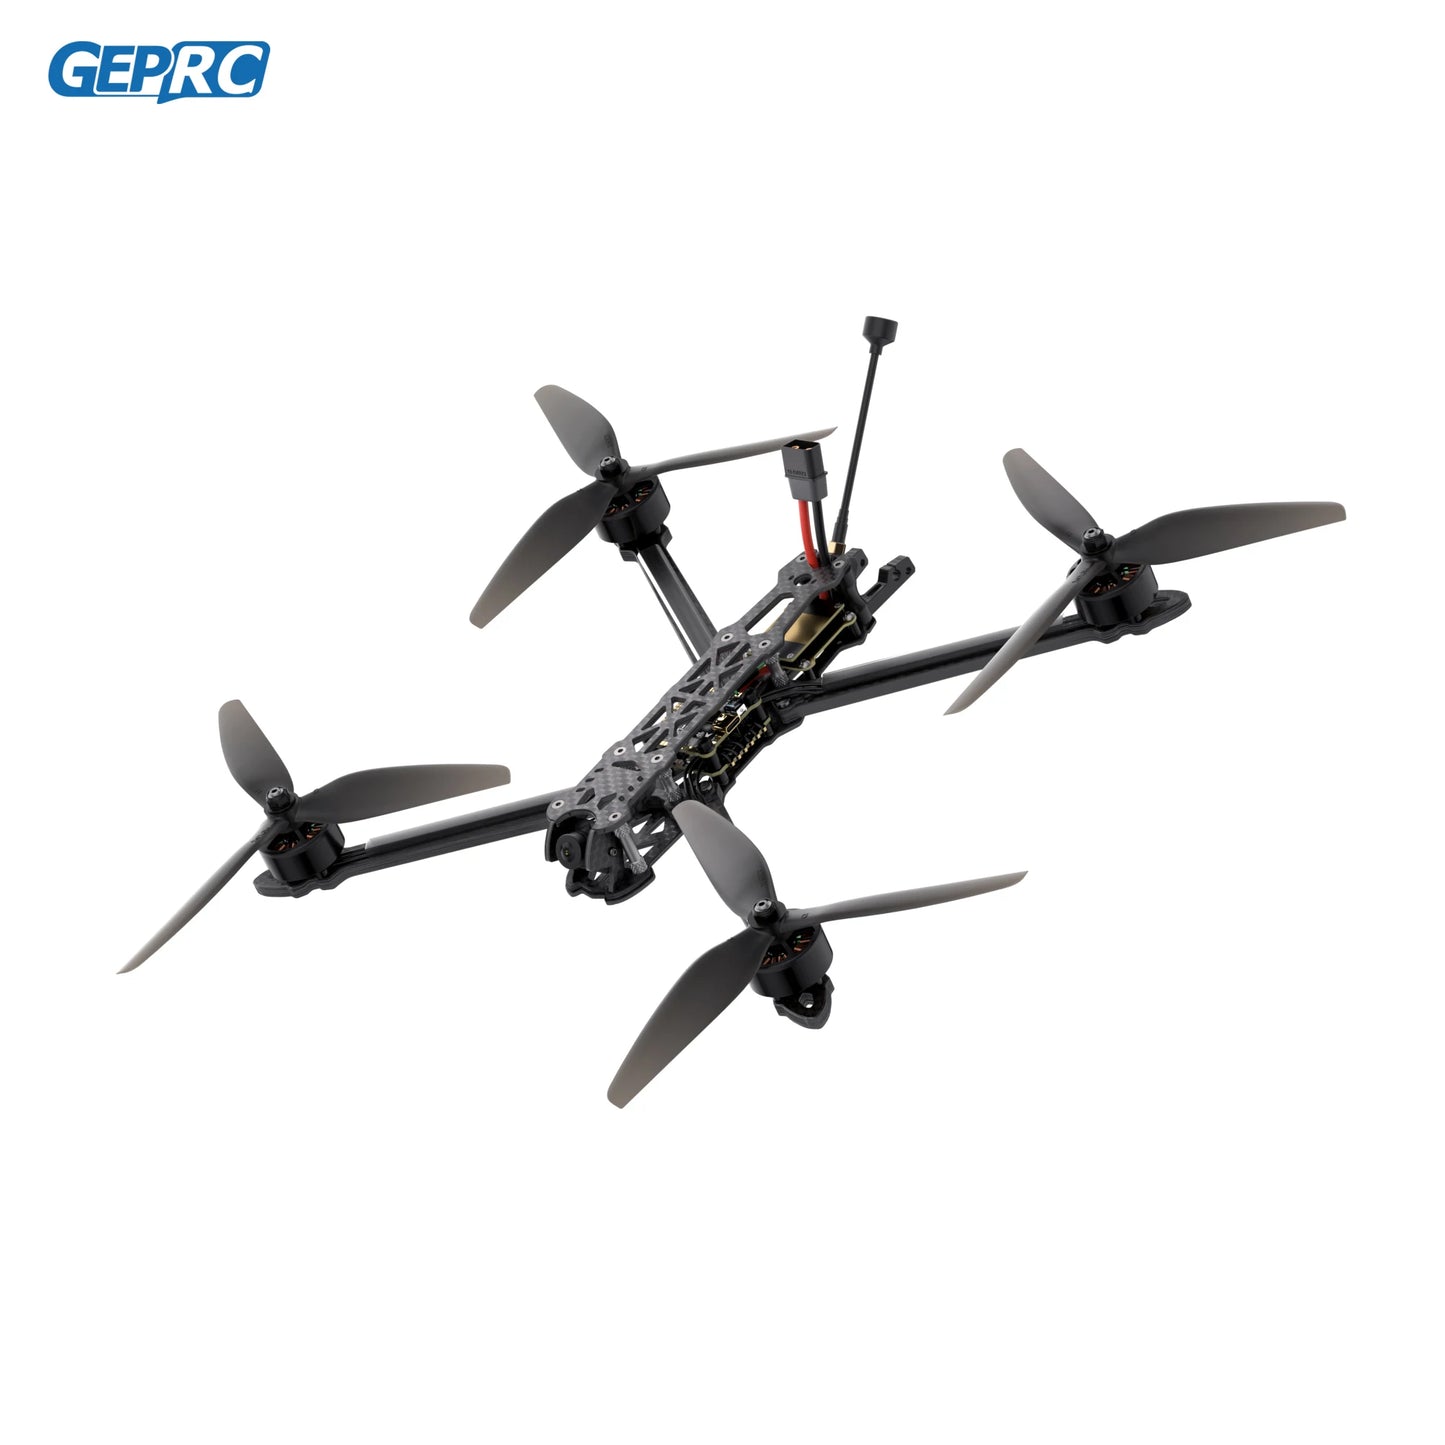 Gerpc MARK4 LR8 5.8G 1.6W FPV-8 pouces EM2810 KV1280 GEP-BLS60A-4IN1 ESC quadrirotor longue portée Freestyle RC Drone avion Rc